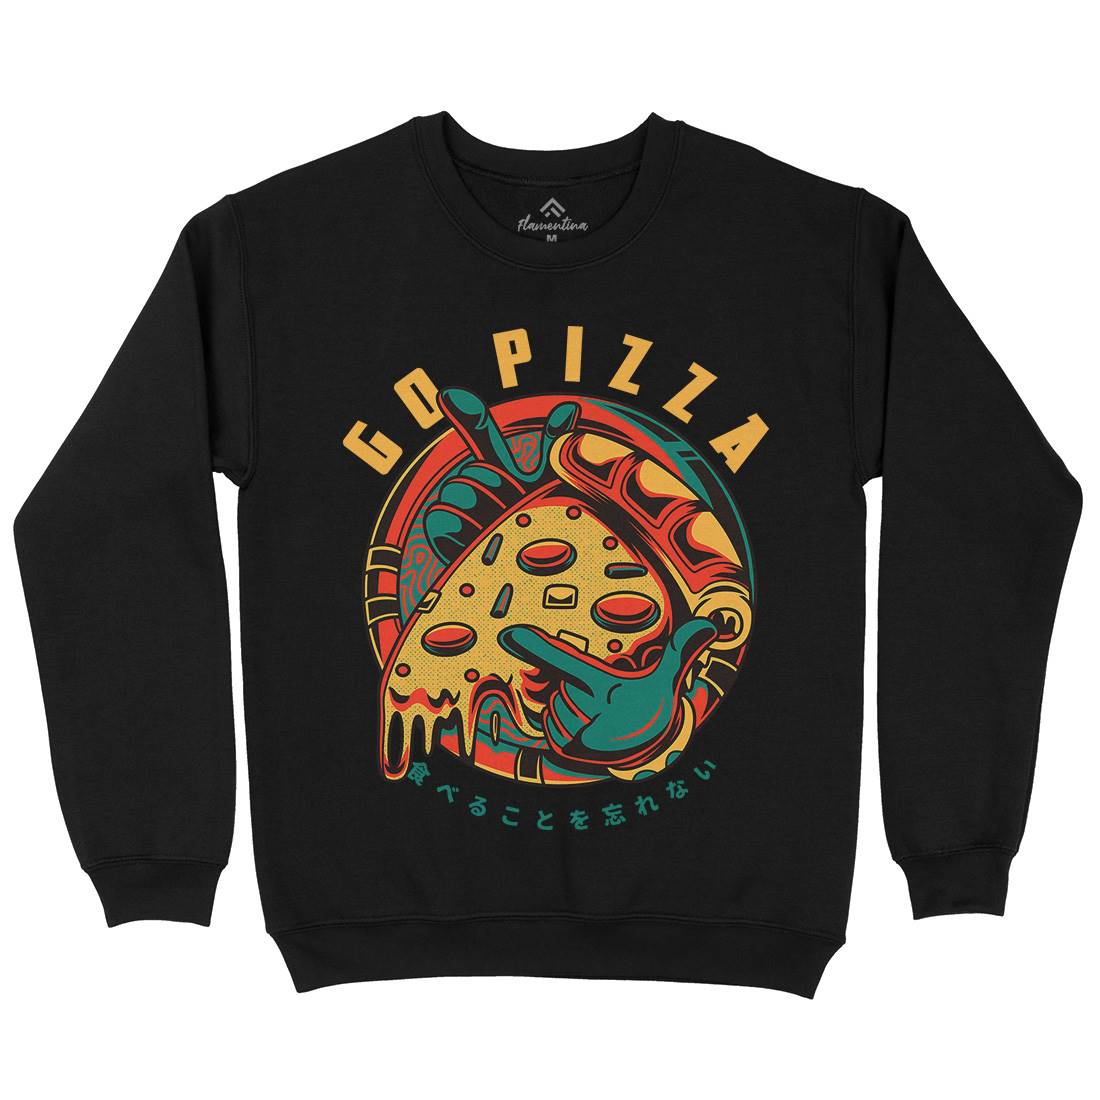 Go Pizza Kids Crew Neck Sweatshirt Food D795